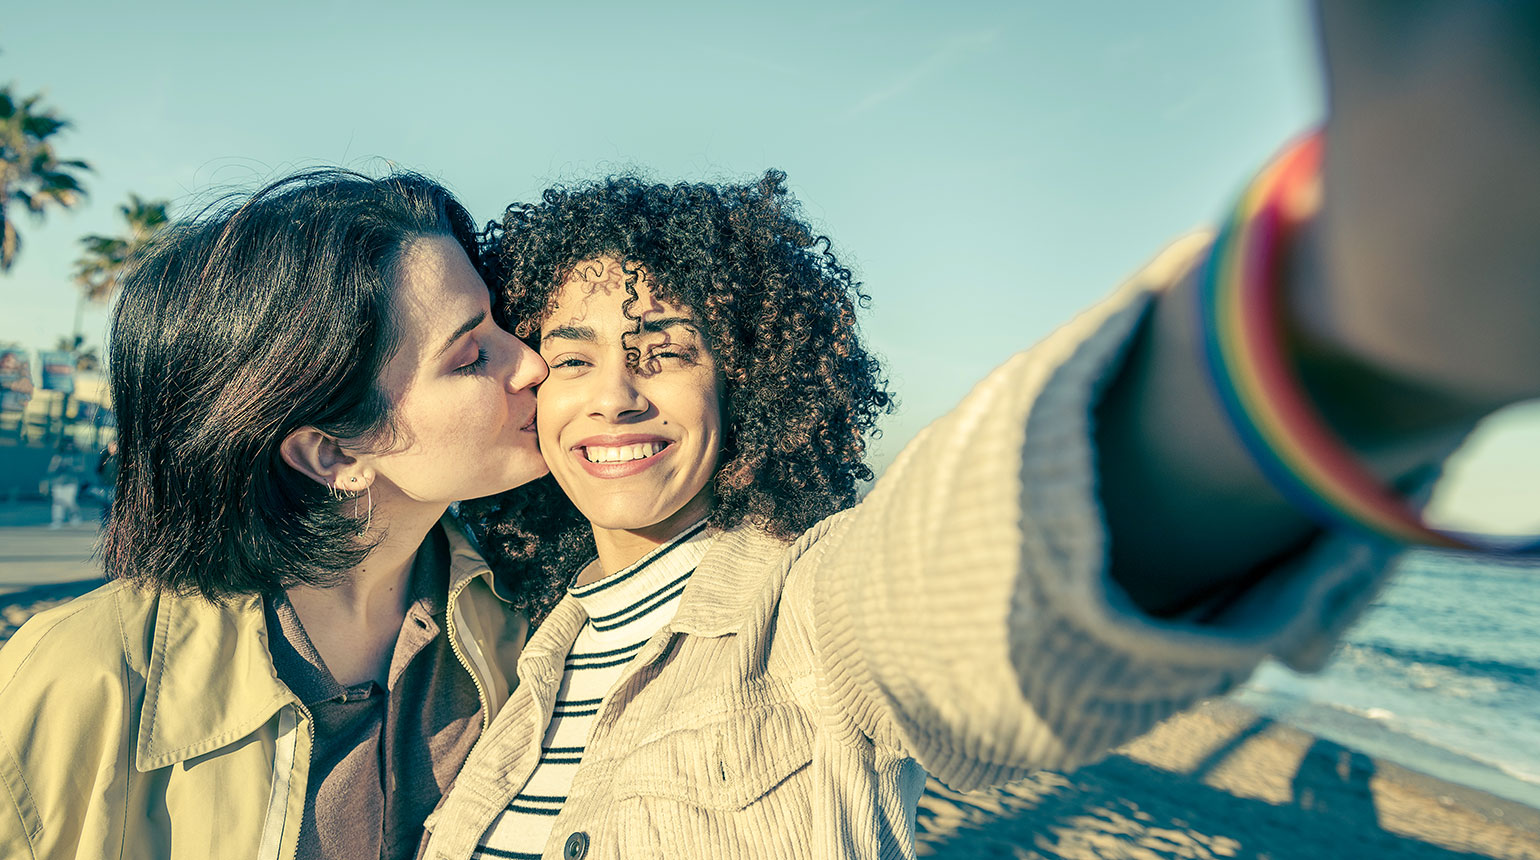 Zwei junge Frauen machen ein Selfie. Eine küsst die andere auf die Wange.